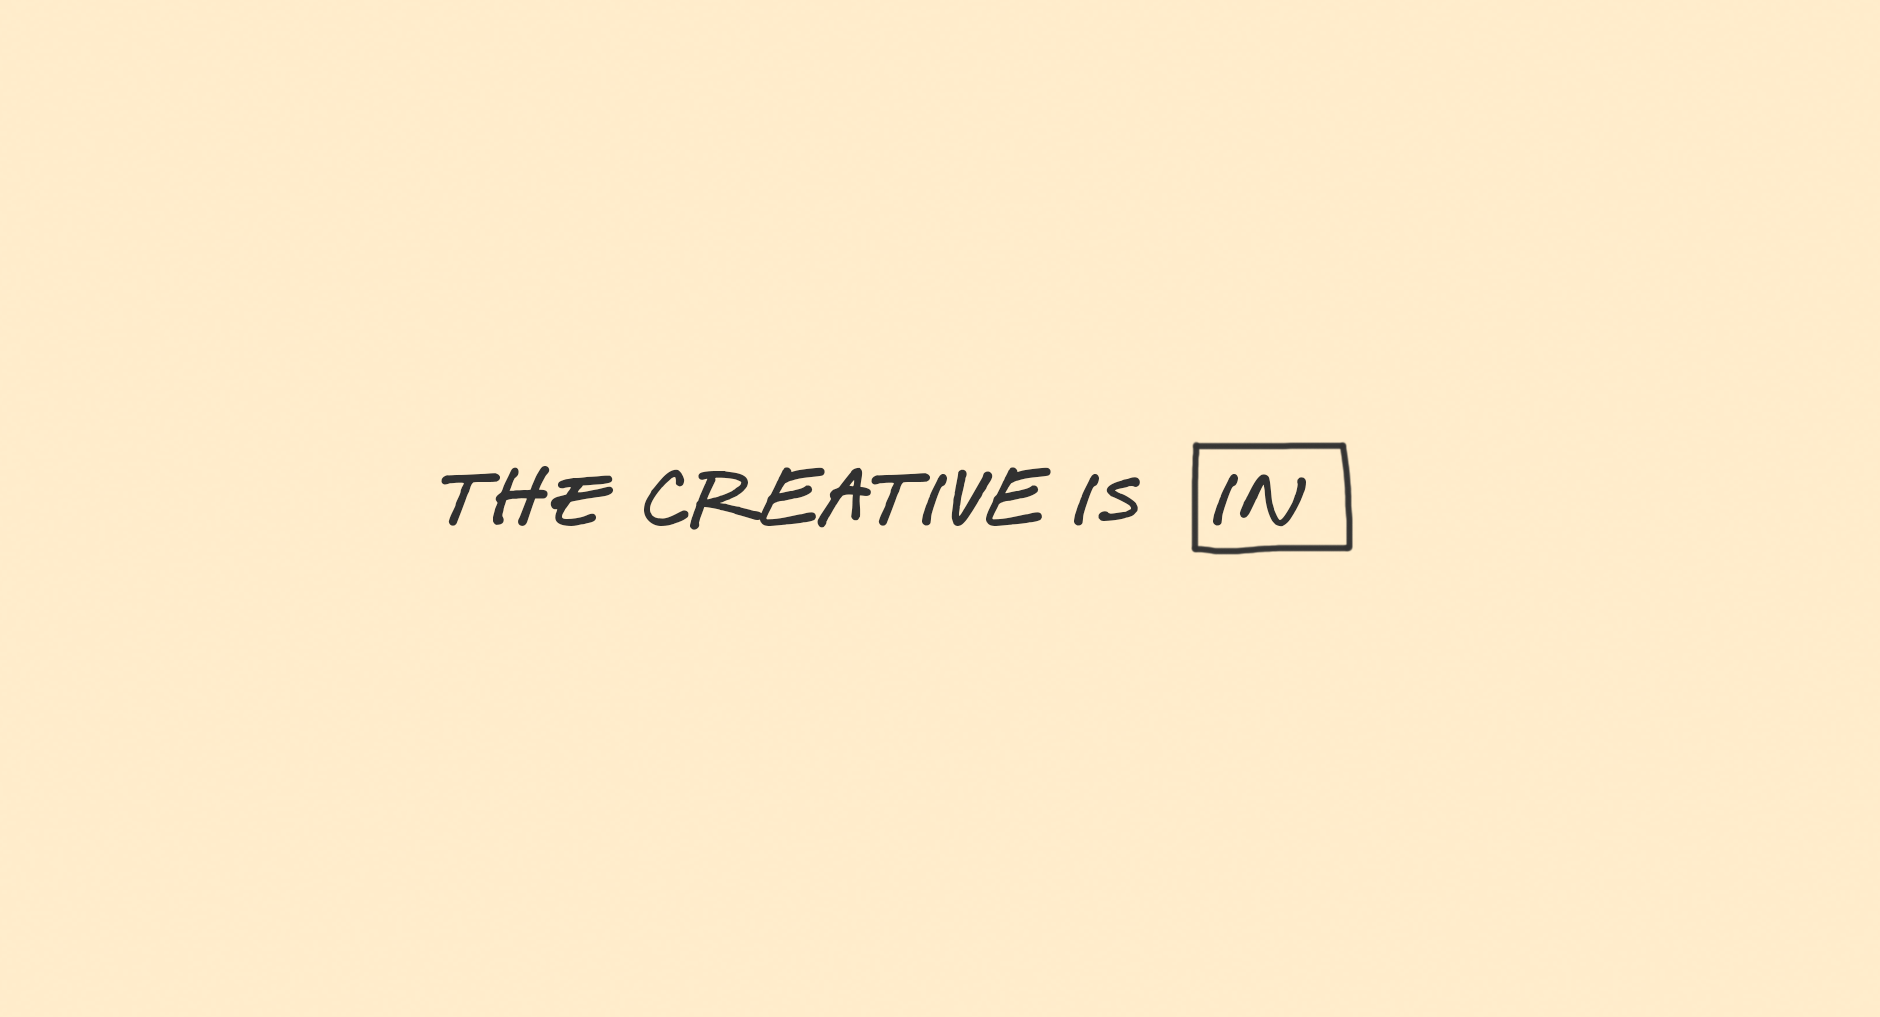 handwritten words "the creative is in"